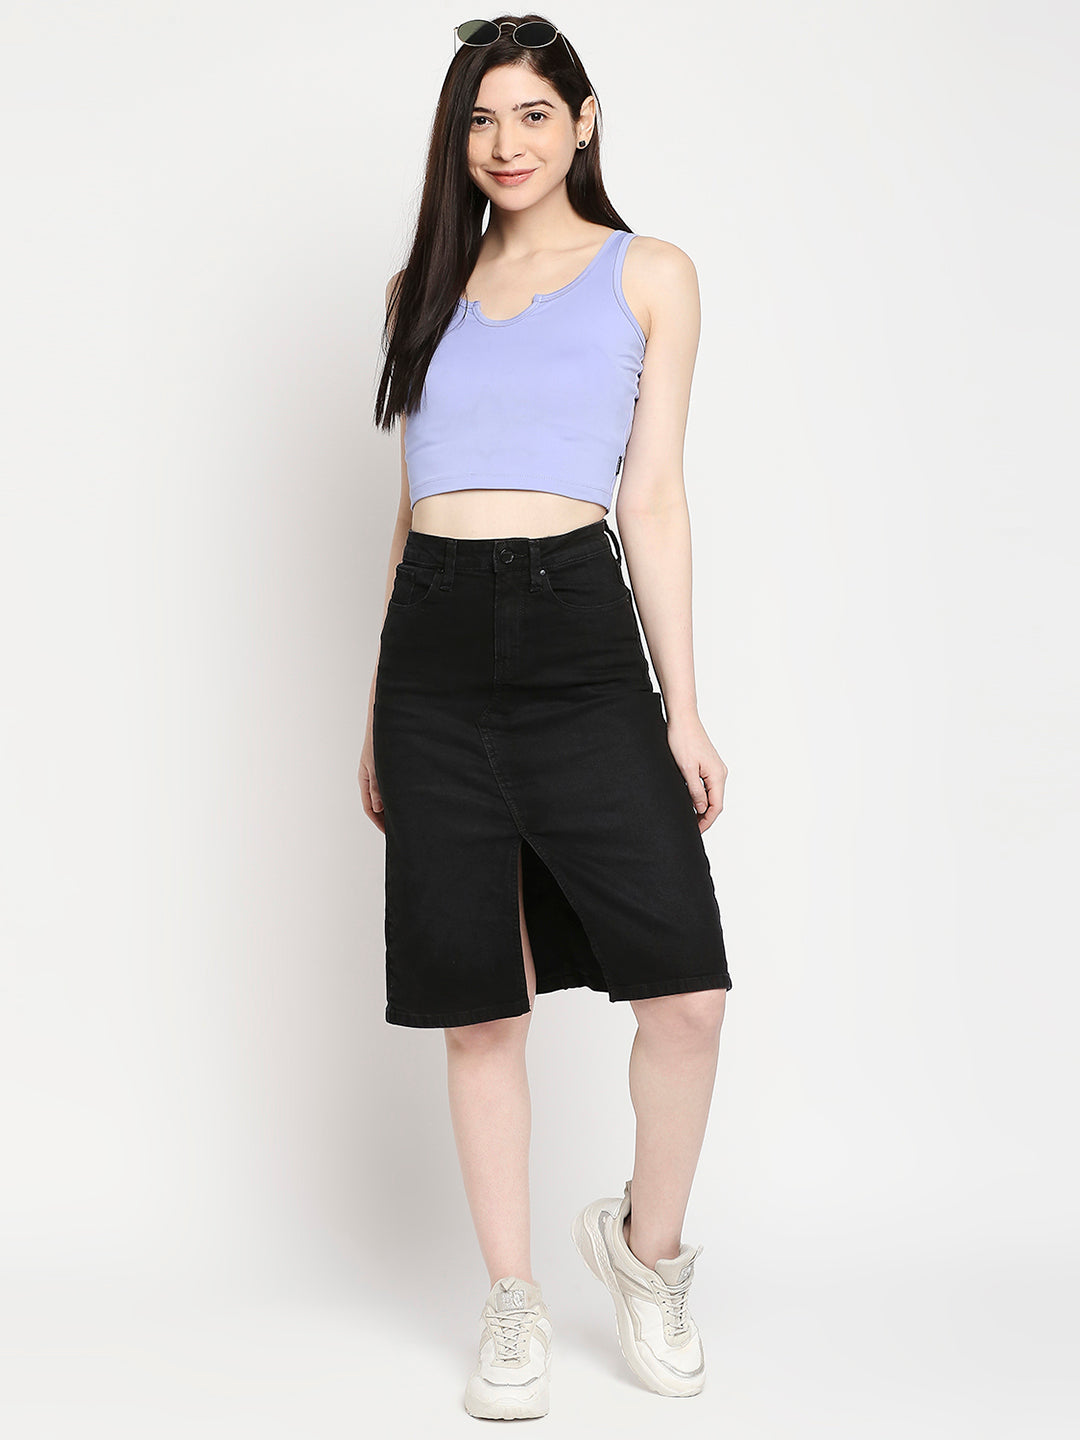 Spykar Black Cotton Straight Fit Regular Length Skirt For Women (Bella)